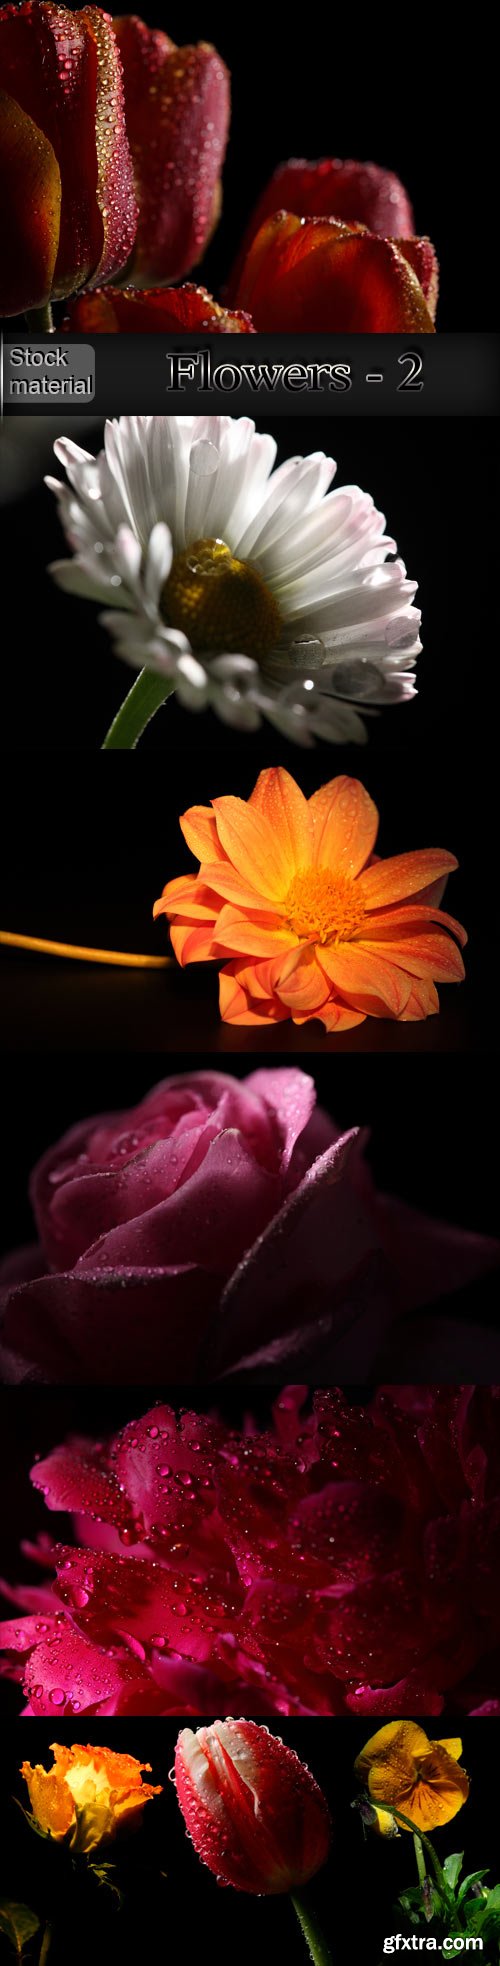 Luxury flowers on a dark background - 2